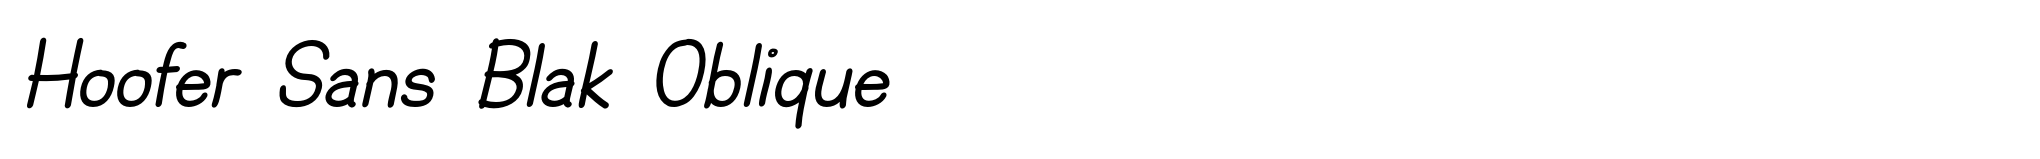 Hoofer Sans Blak Oblique image